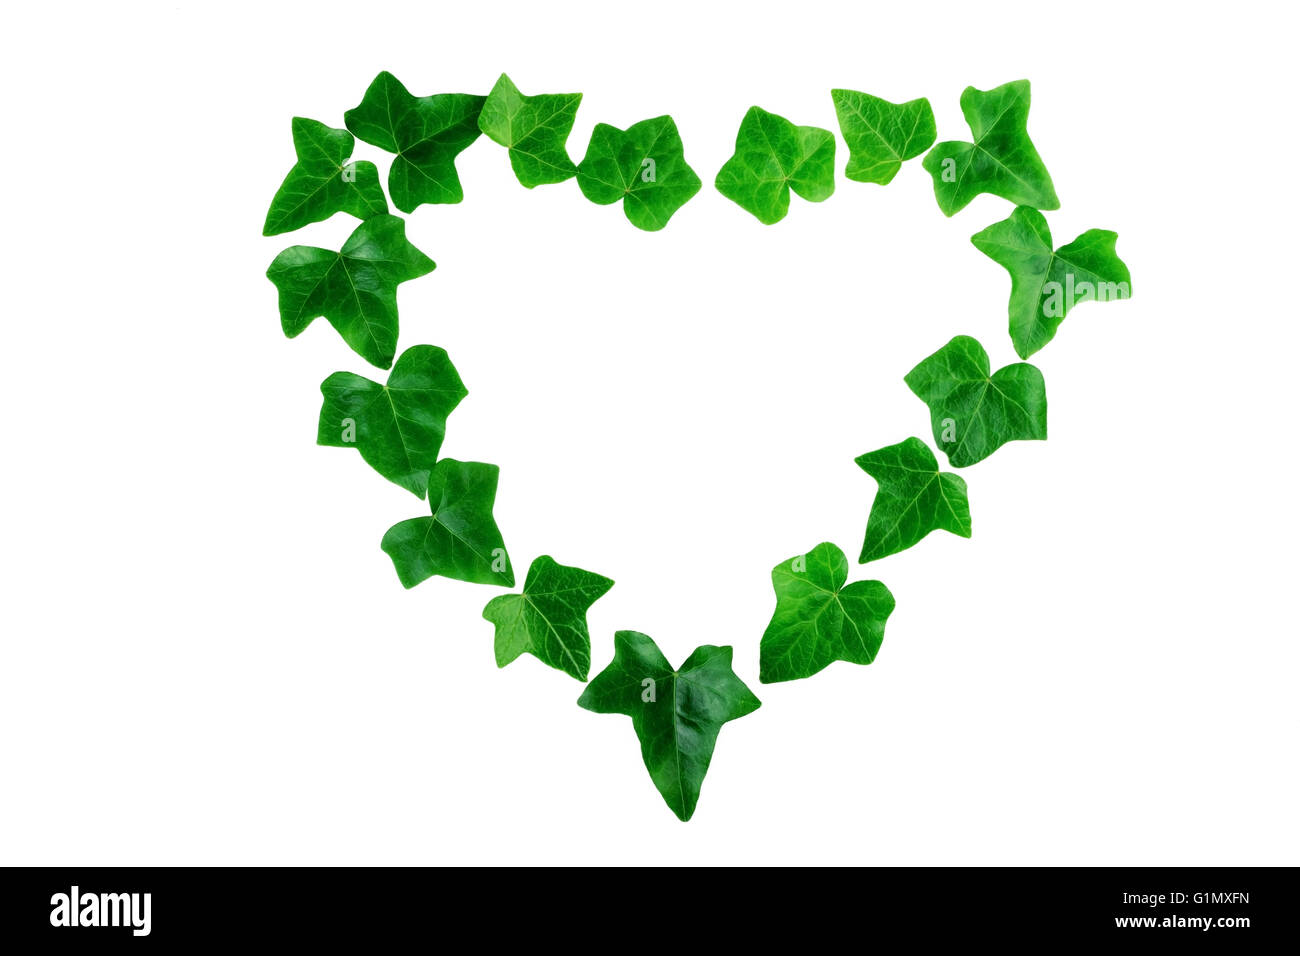 Feuilles de lierre vert en forme de coeur sur fond blanc. Mise à plat. Banque D'Images